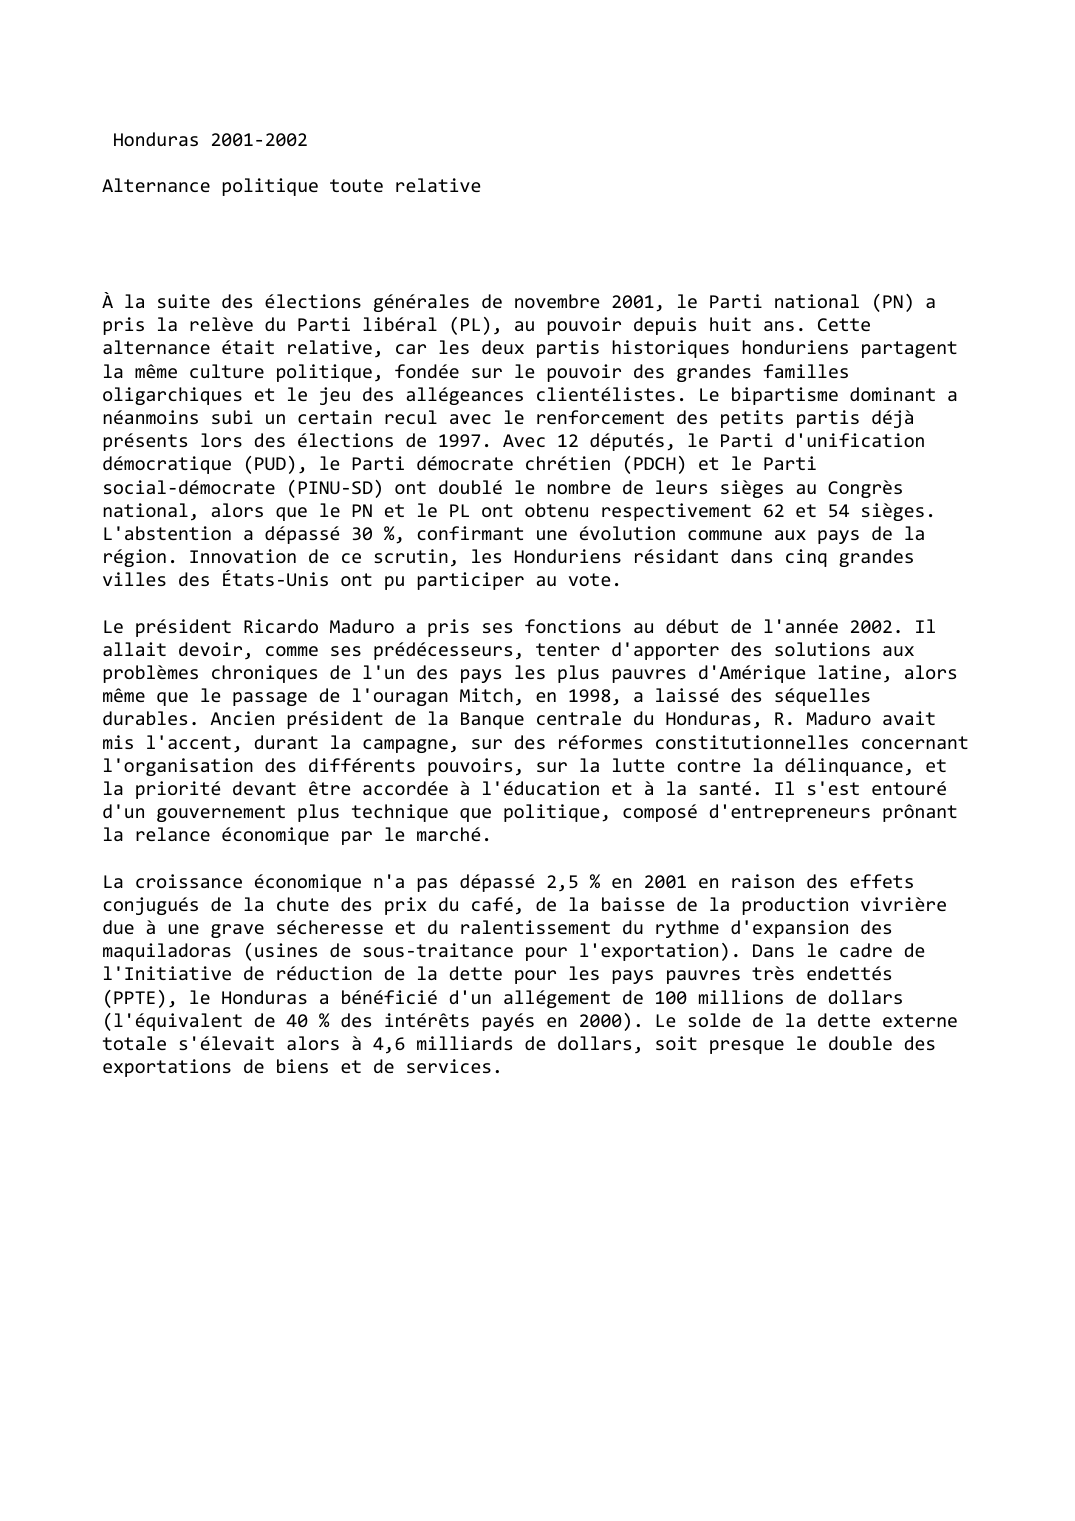 Prévisualisation du document Honduras (2001-2002)

Alternance politique toute relative